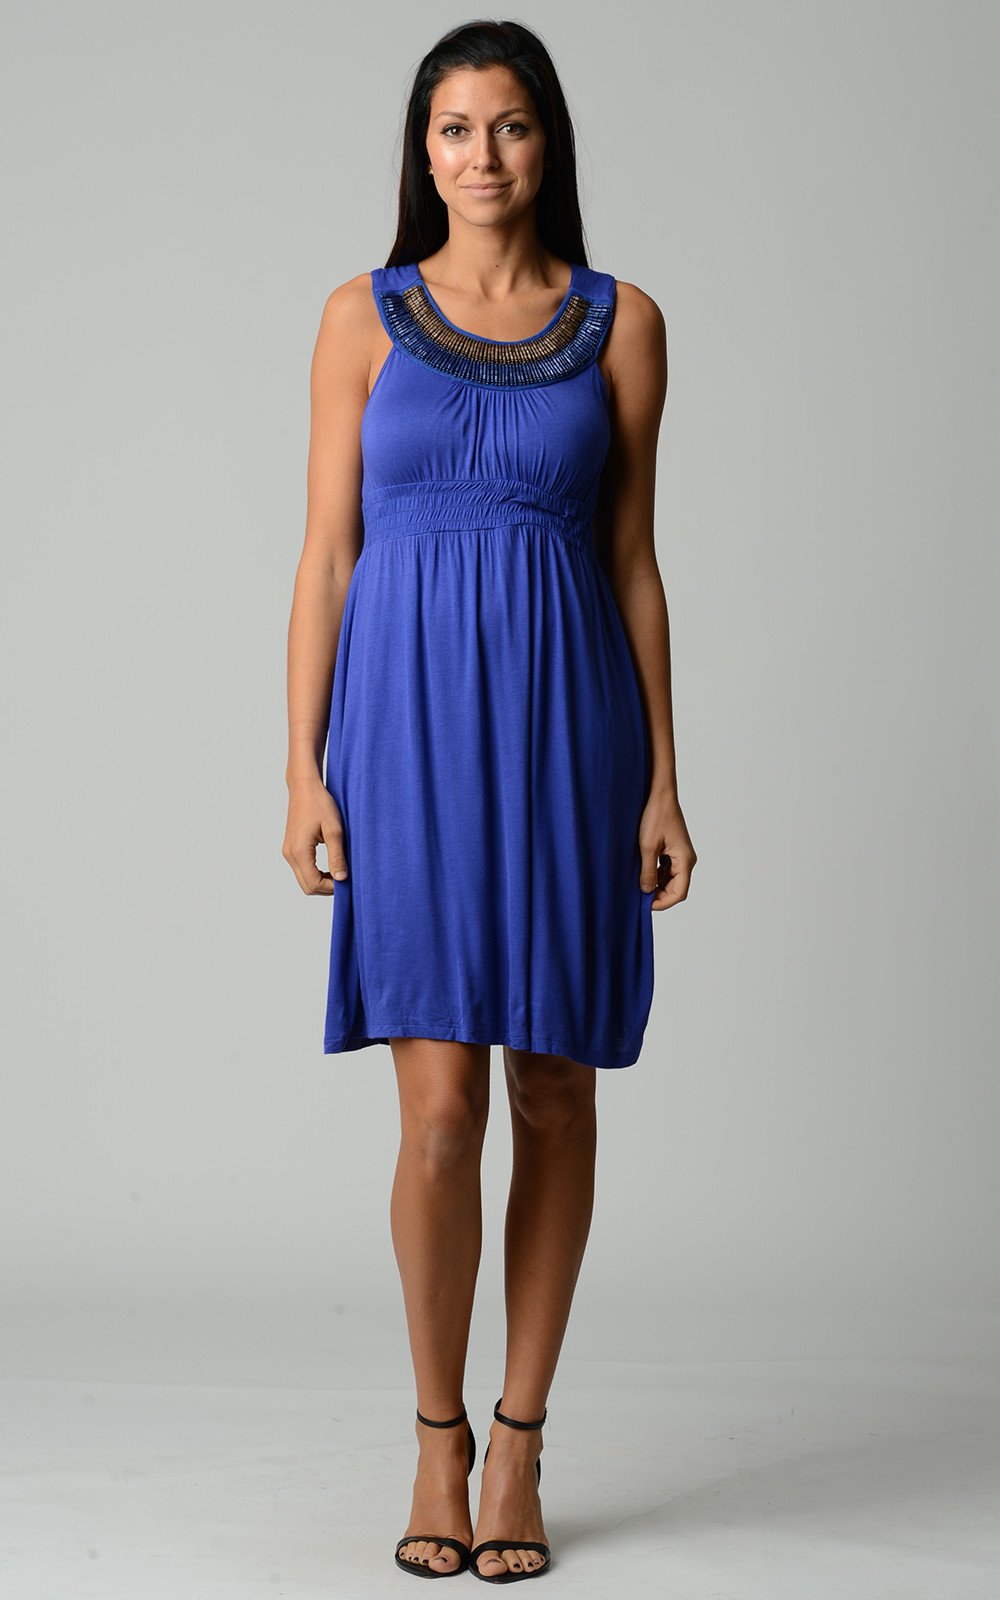 Christine V Beaded Neckline Sleeveless Dress - WholesaleClothingDeals - 1